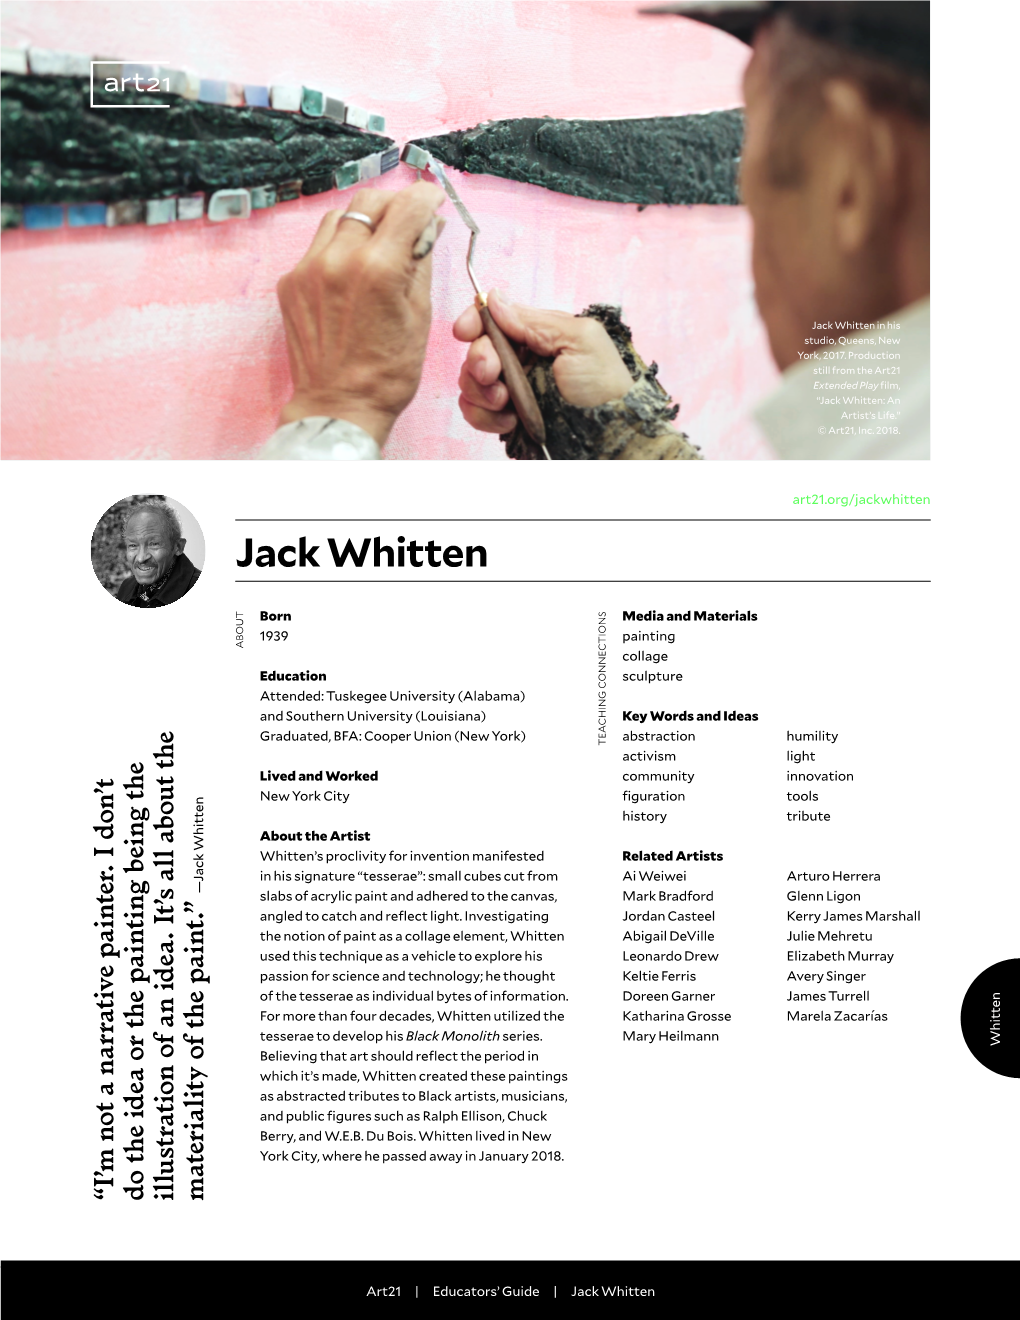 Jack Whitten in His Studio, Queens, New York, 2017